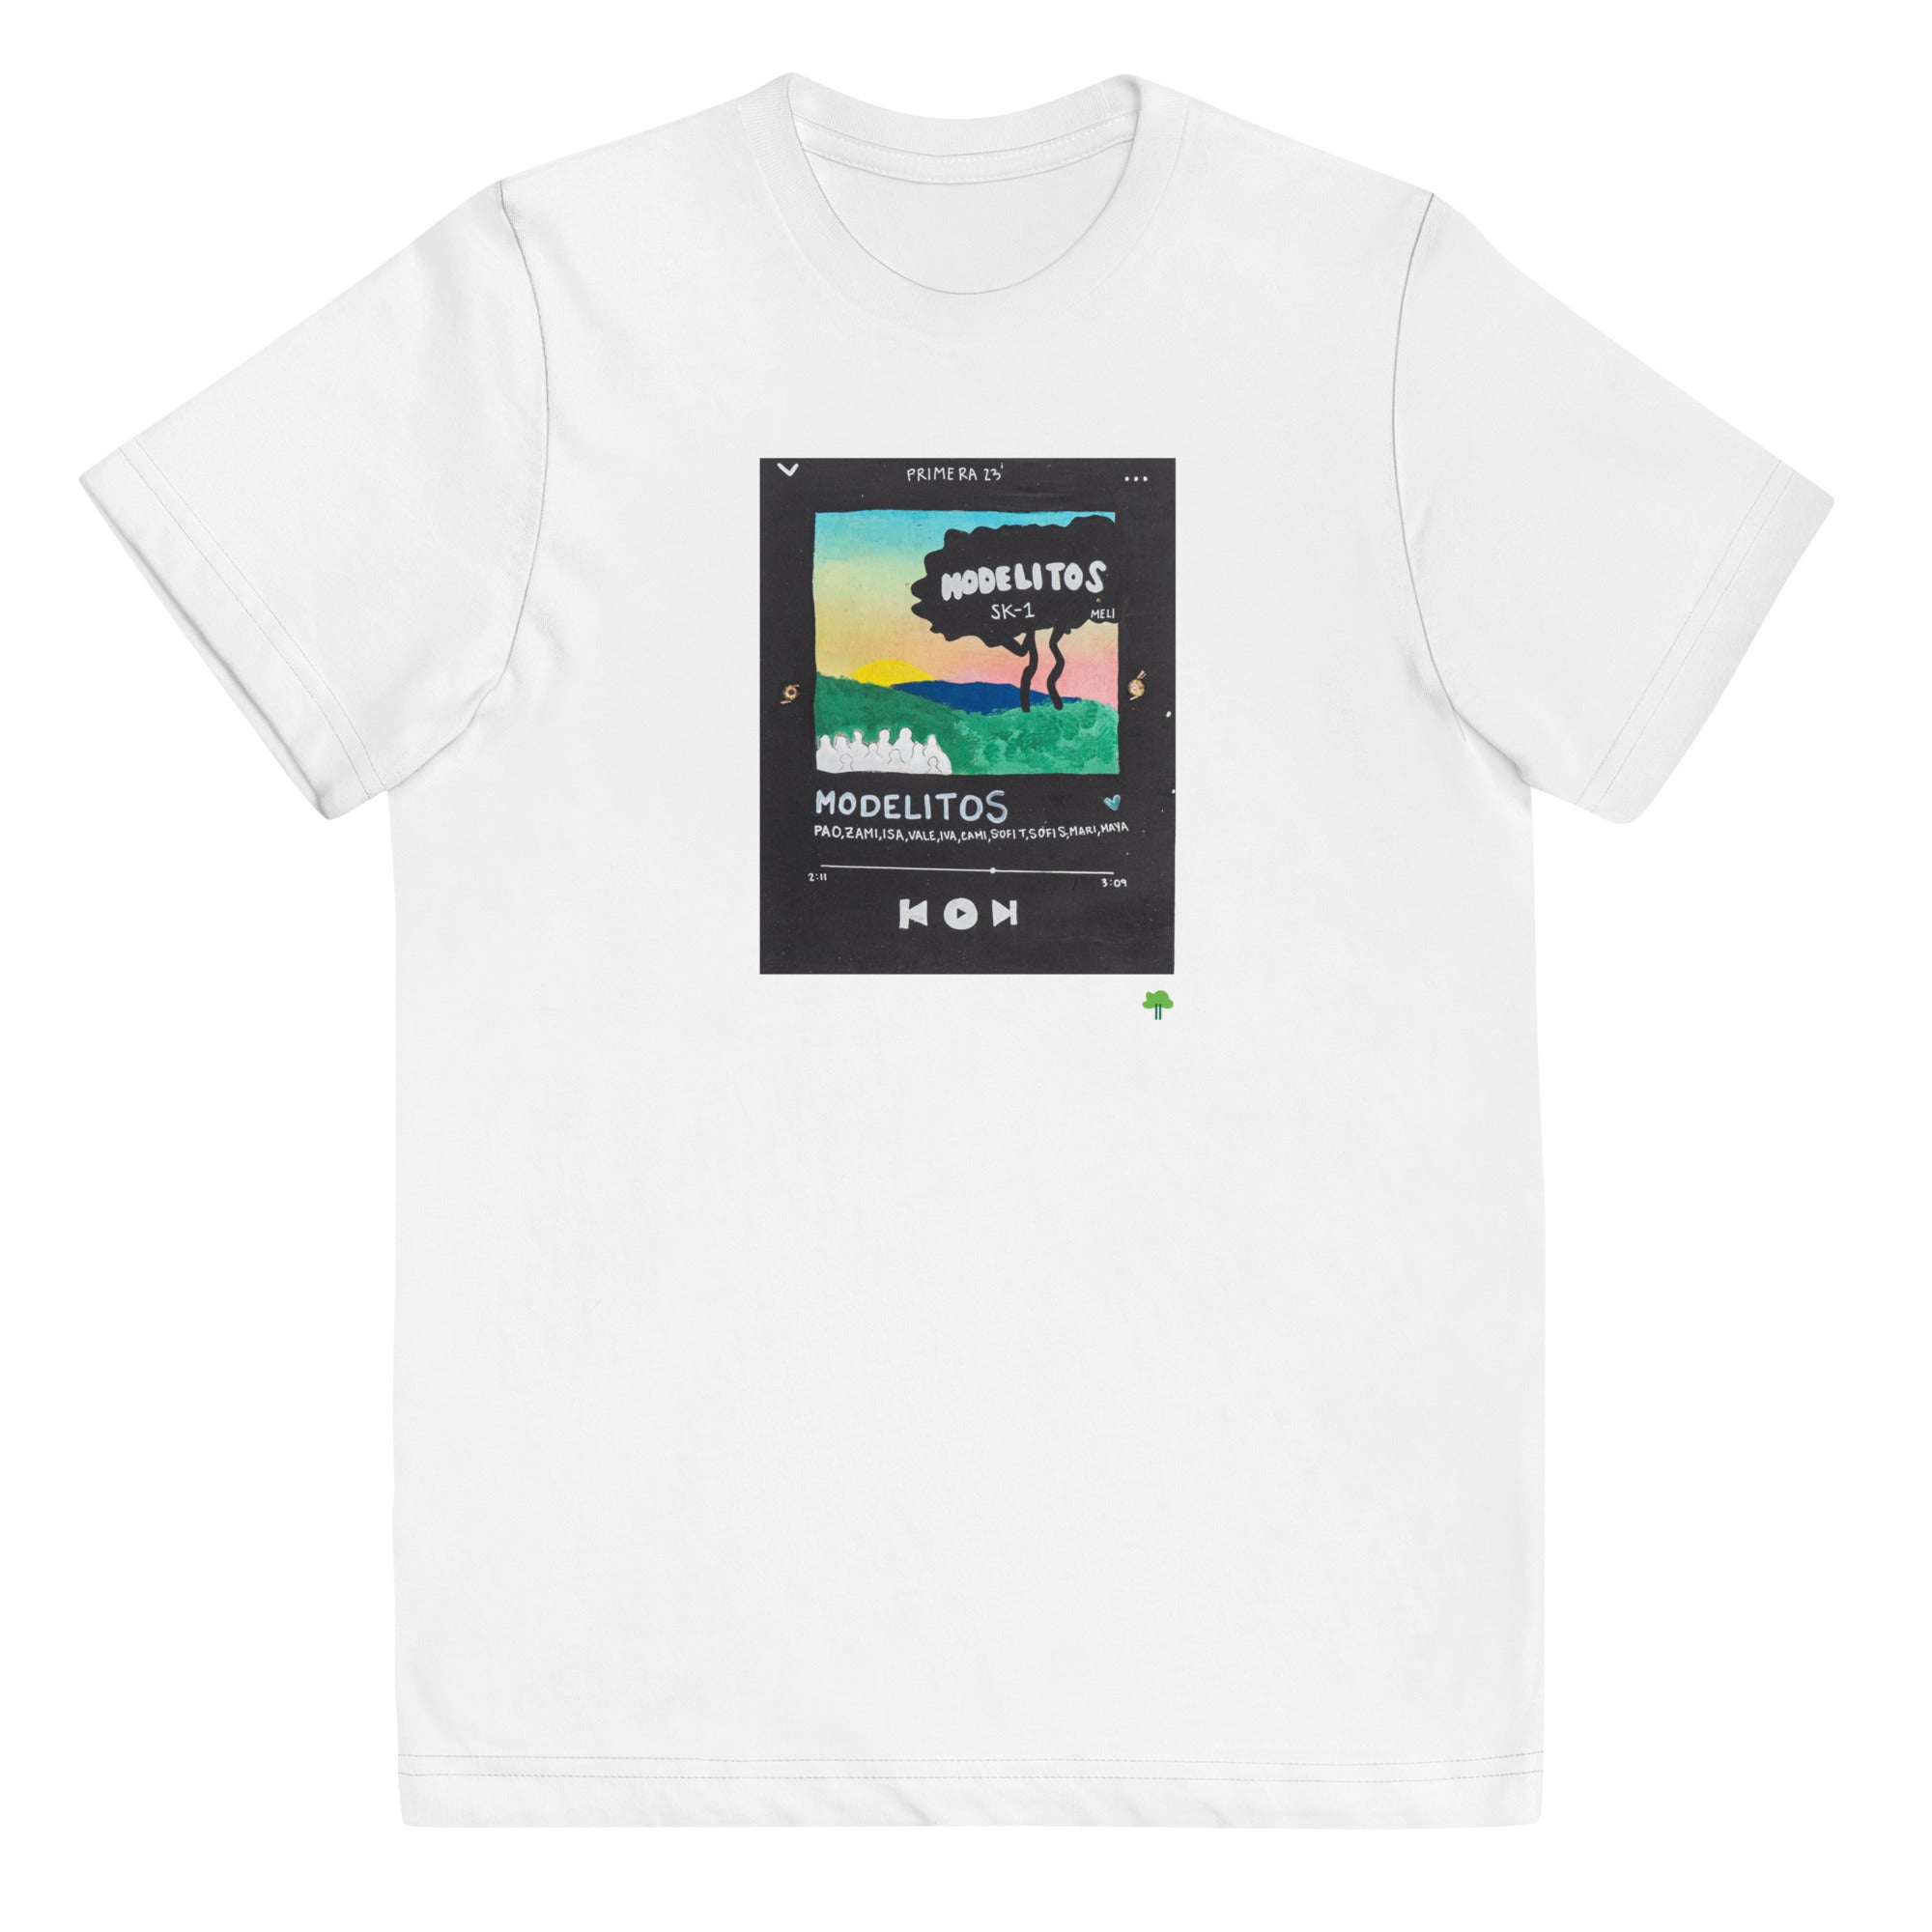 I Temp - Sabana - K1 | Youth jersey t-shirt